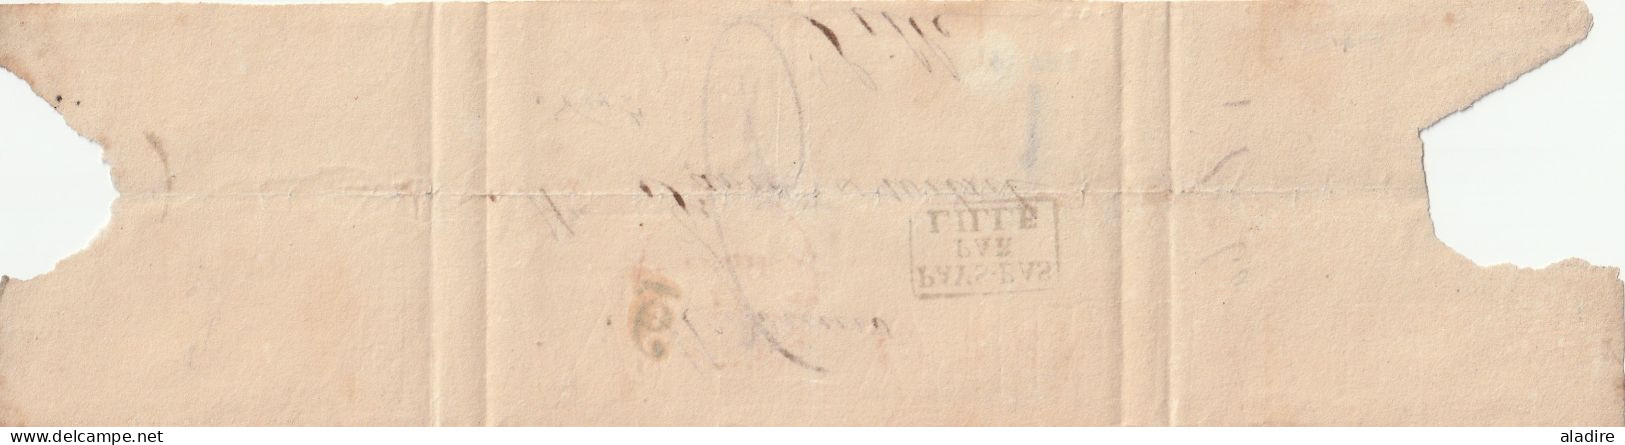 Circa 1830 - Bande De Journal De Belgique Vers Lille, France - Entrée Pays Bas Par LILLE - Taxe 6 - LPB2R - 1815-1830 (Hollandse Tijd)